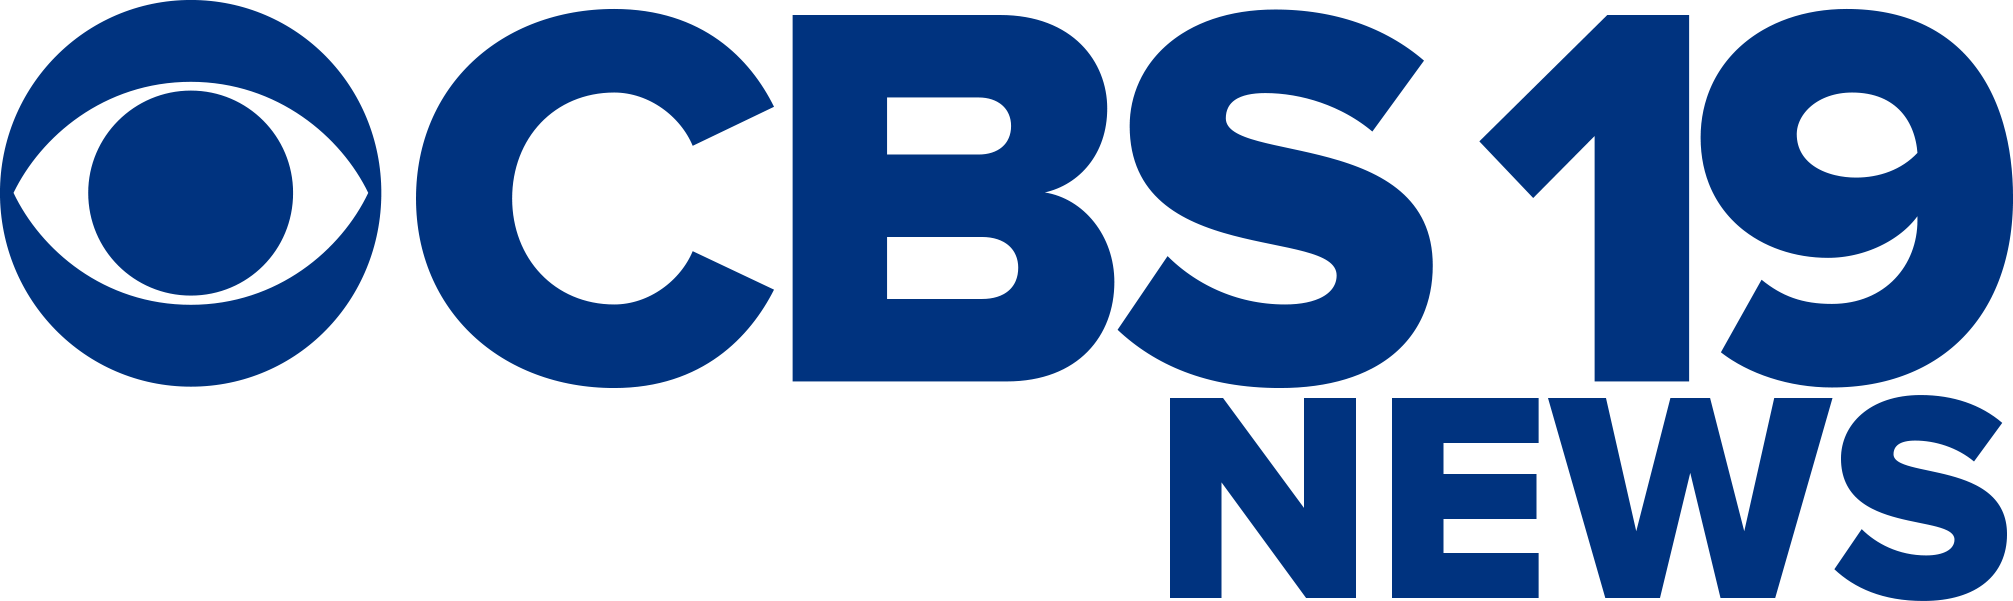 C B S19 News Logo PNG